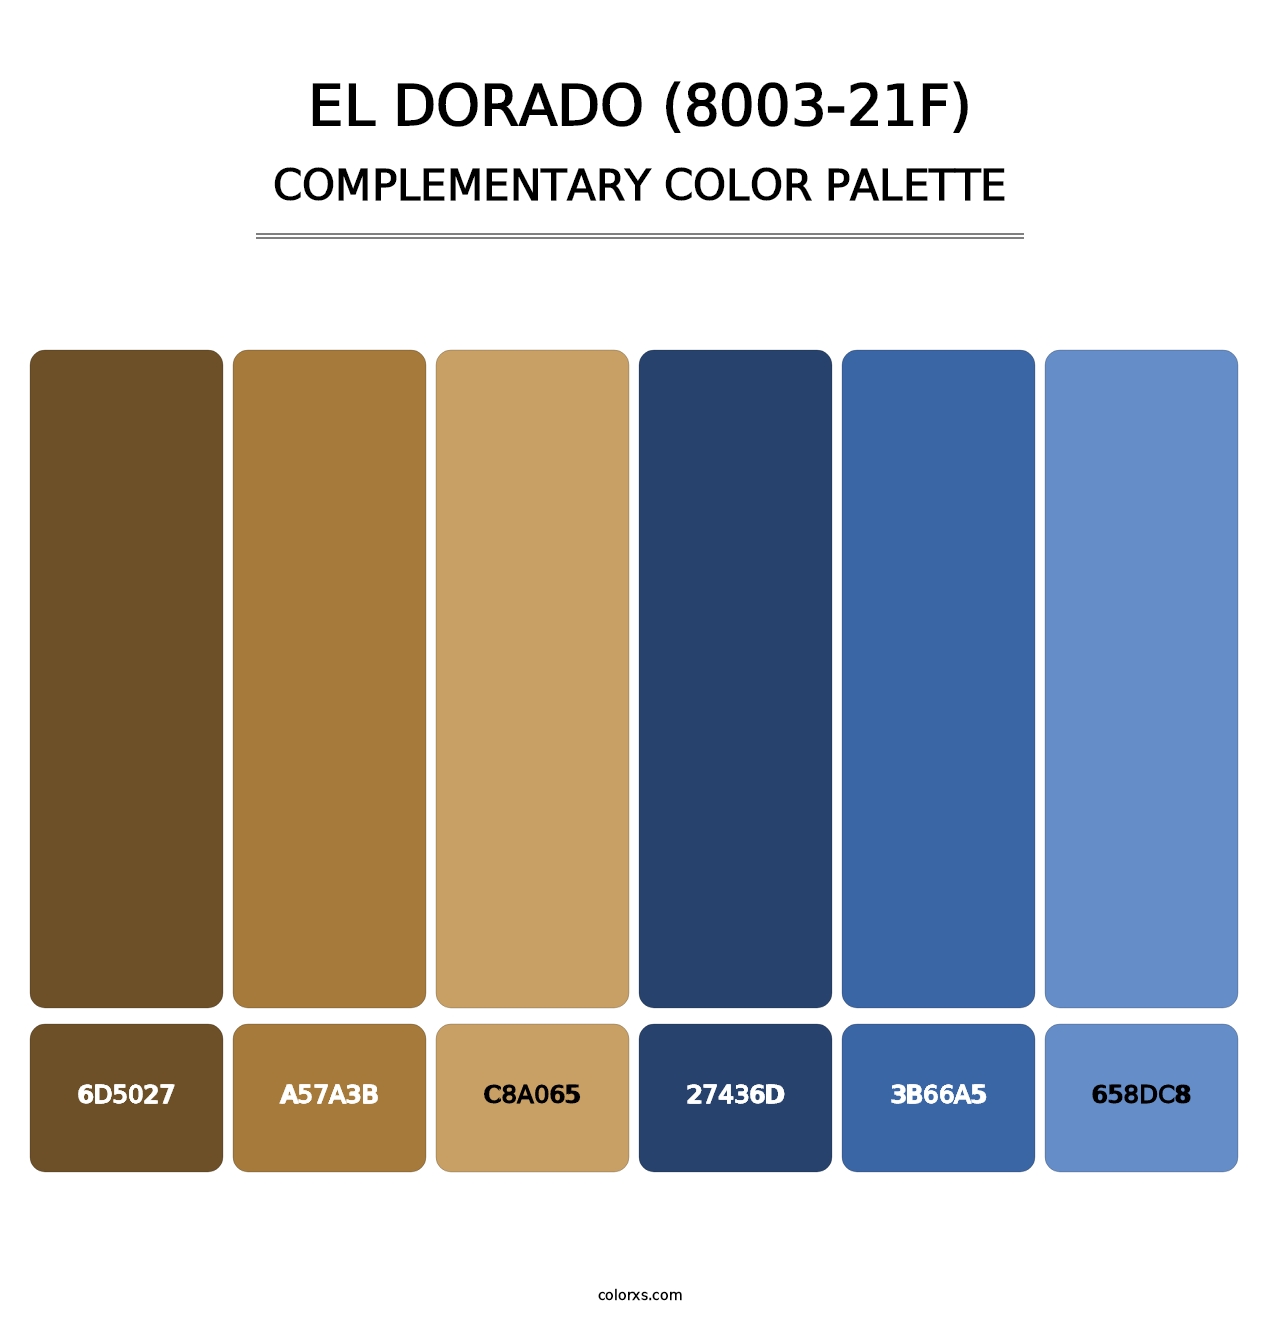 El Dorado (8003-21F) - Complementary Color Palette